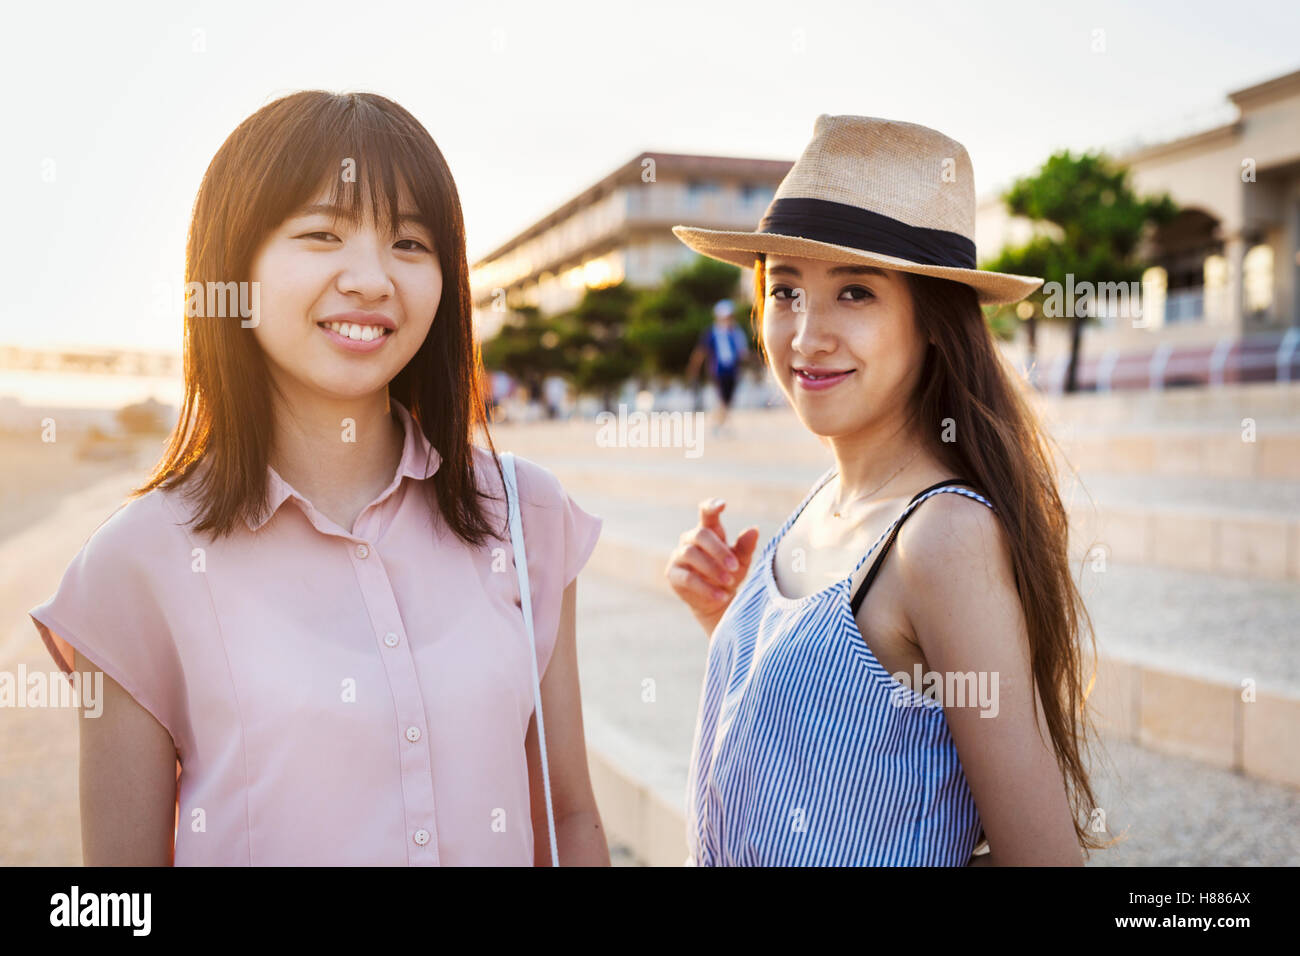 Zwei junge Frauen mit langen braunen Haaren außerhalb eines Einkaufszentrums. Stockfoto